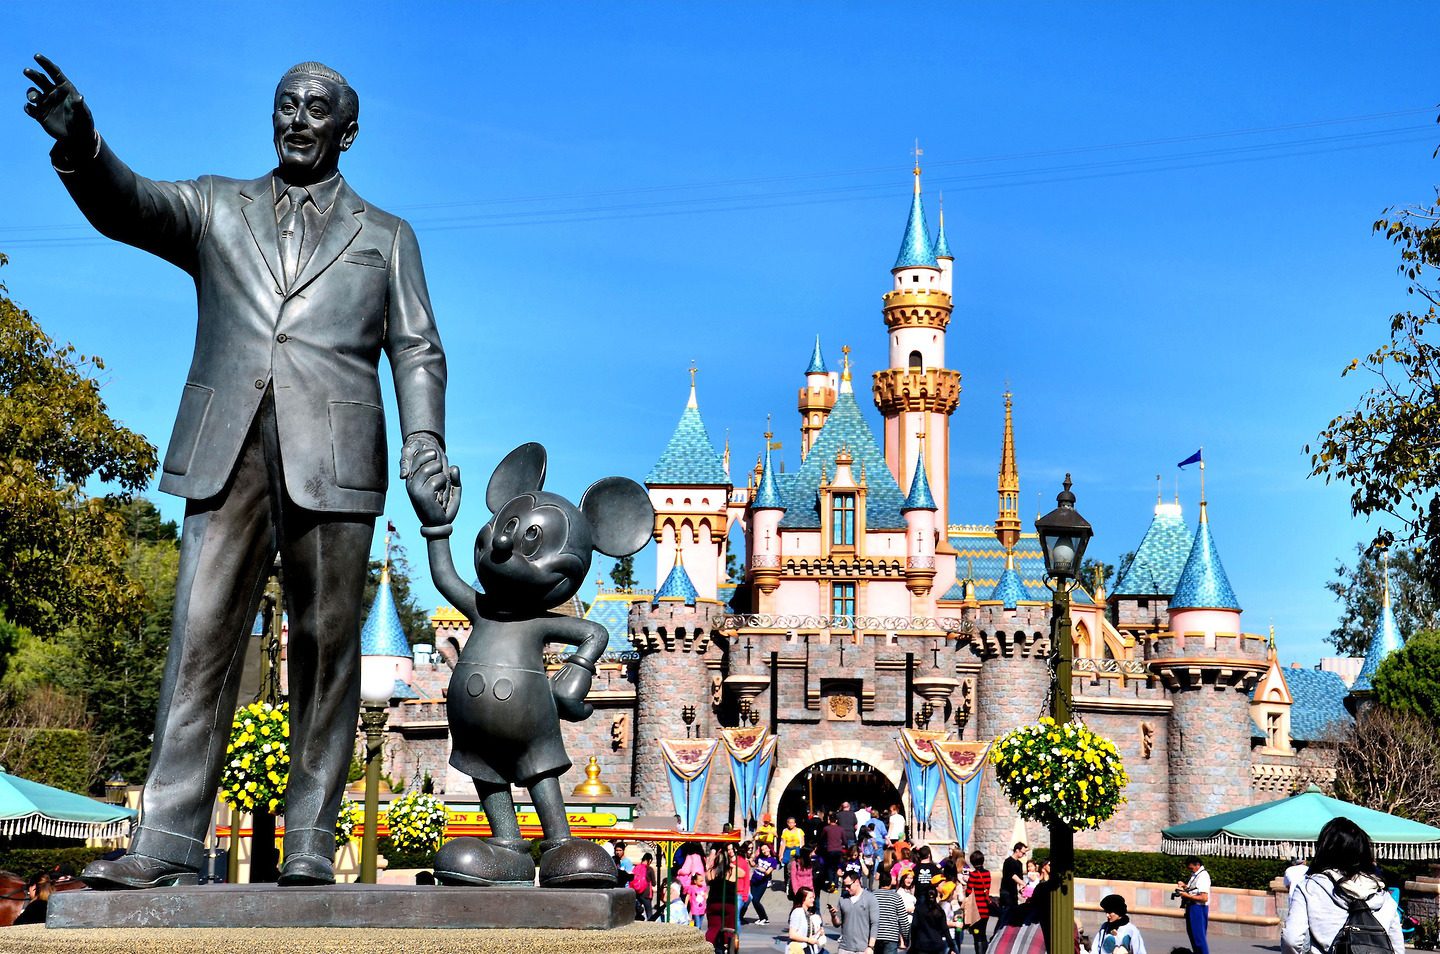 Жизнь уолта диснея. Уолт Дисней Диснейленд. Диснейленд (Walt Disney World), Флорида. Статуя Уолта Диснея. Памятник Уолту Диснею и Микки Маусу.